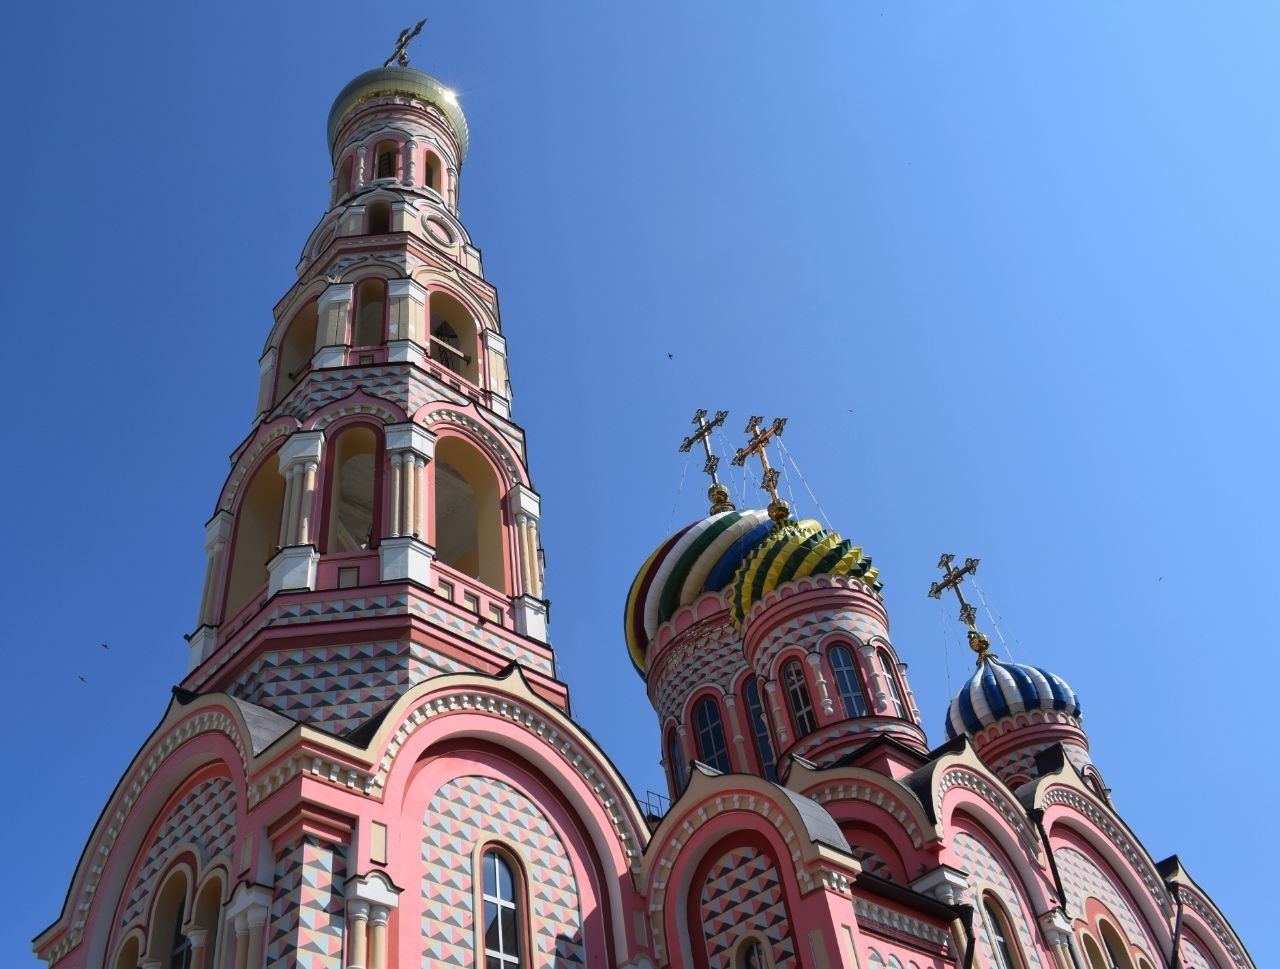 Тамбовский Вознесенский женский монастырь Тамбов, Россия